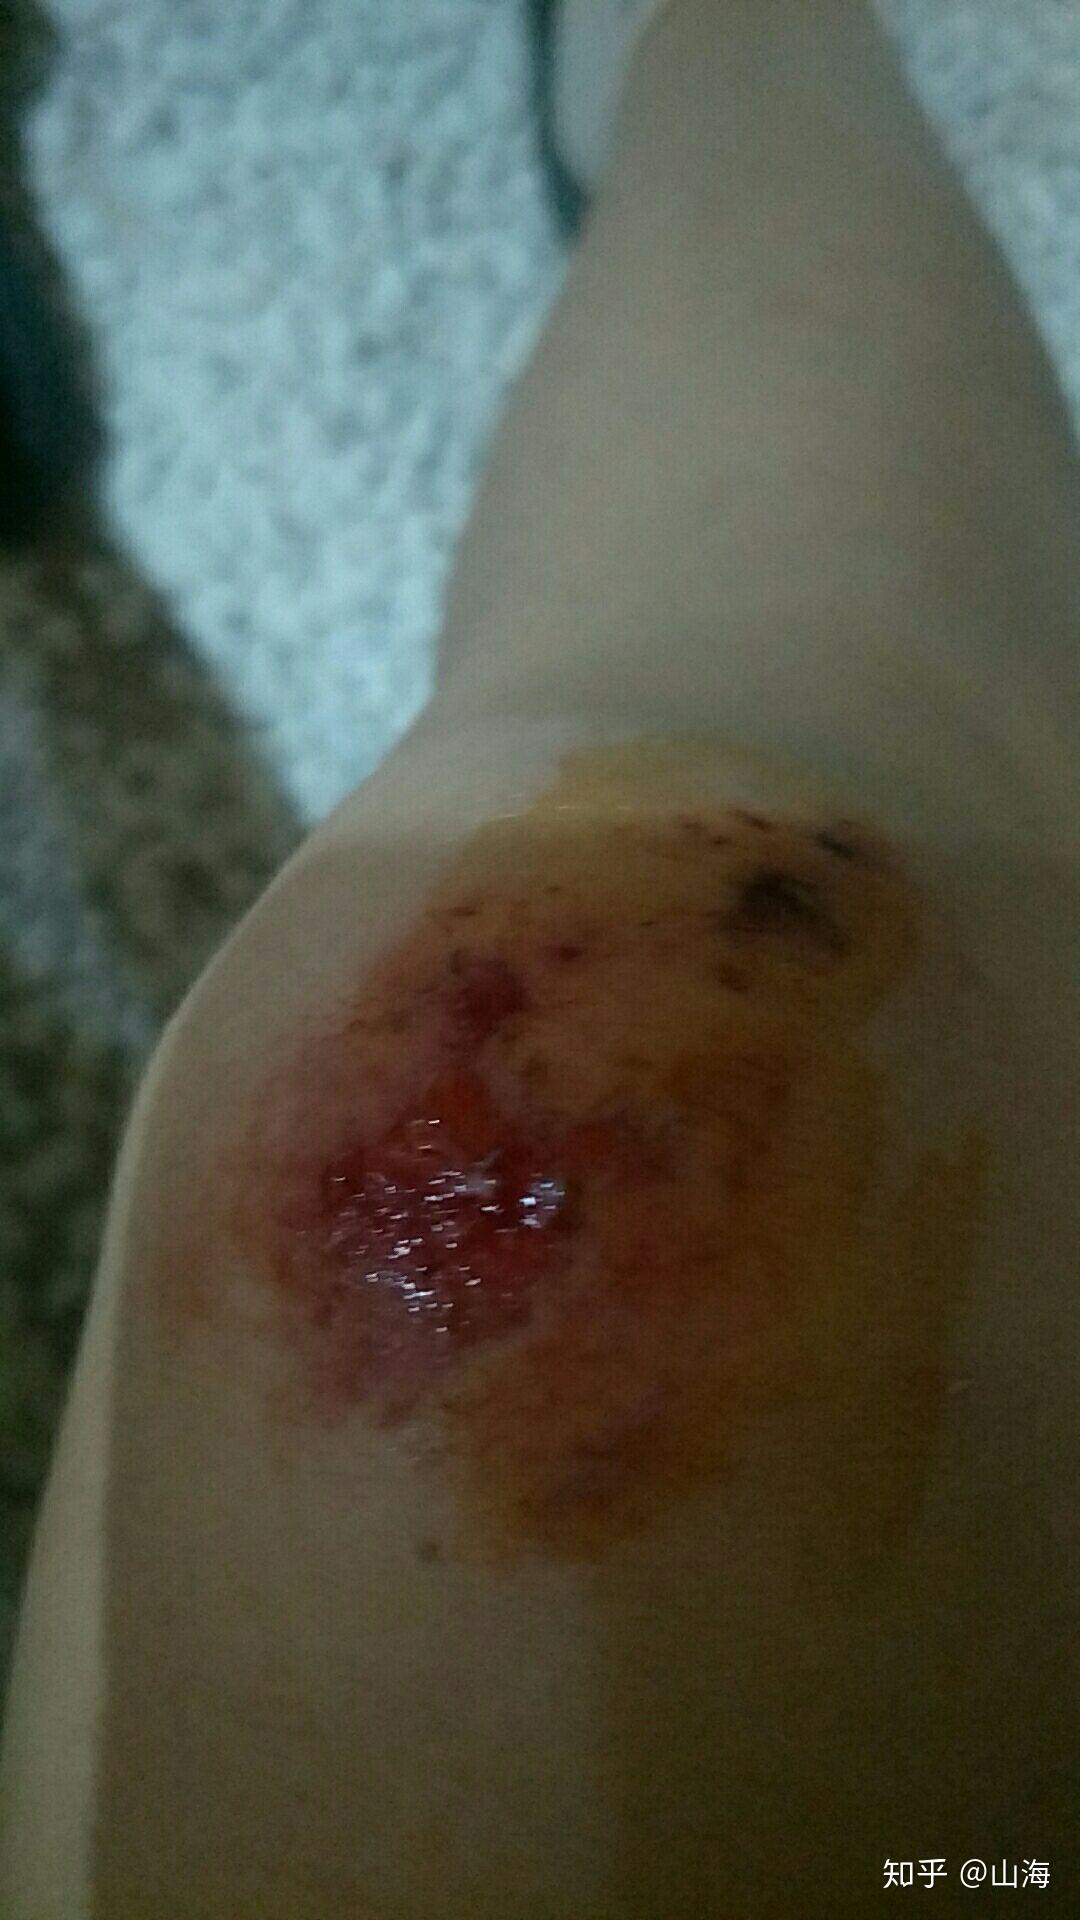 女生骑车摔倒擦伤图片图片